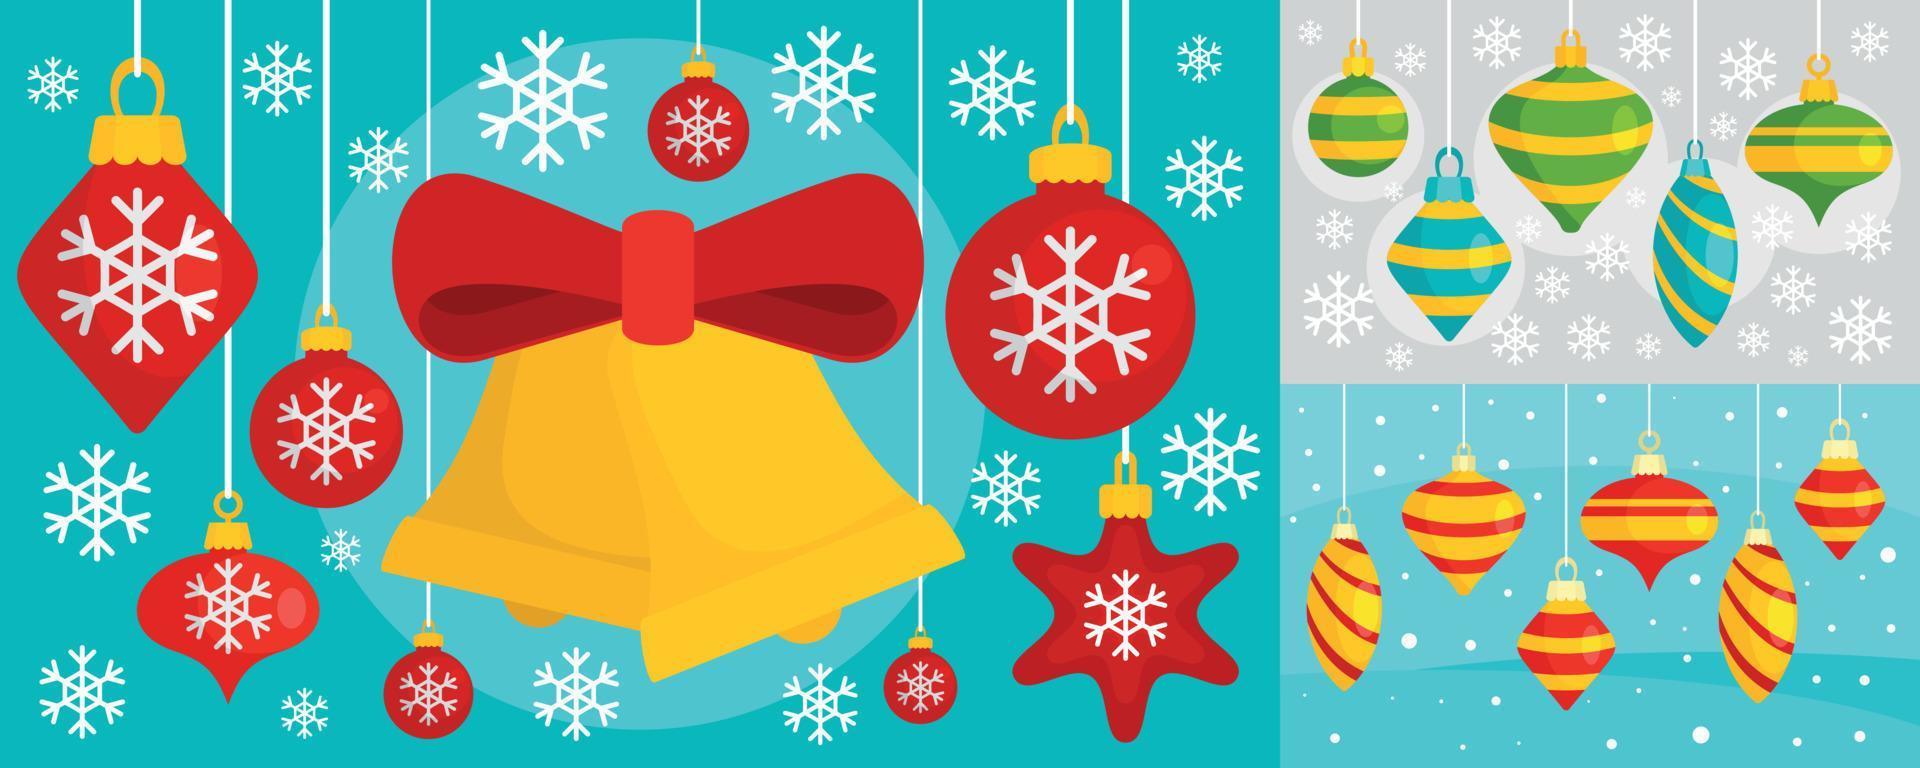 versier kerstboom speelgoed banner set, vlakke stijl vector